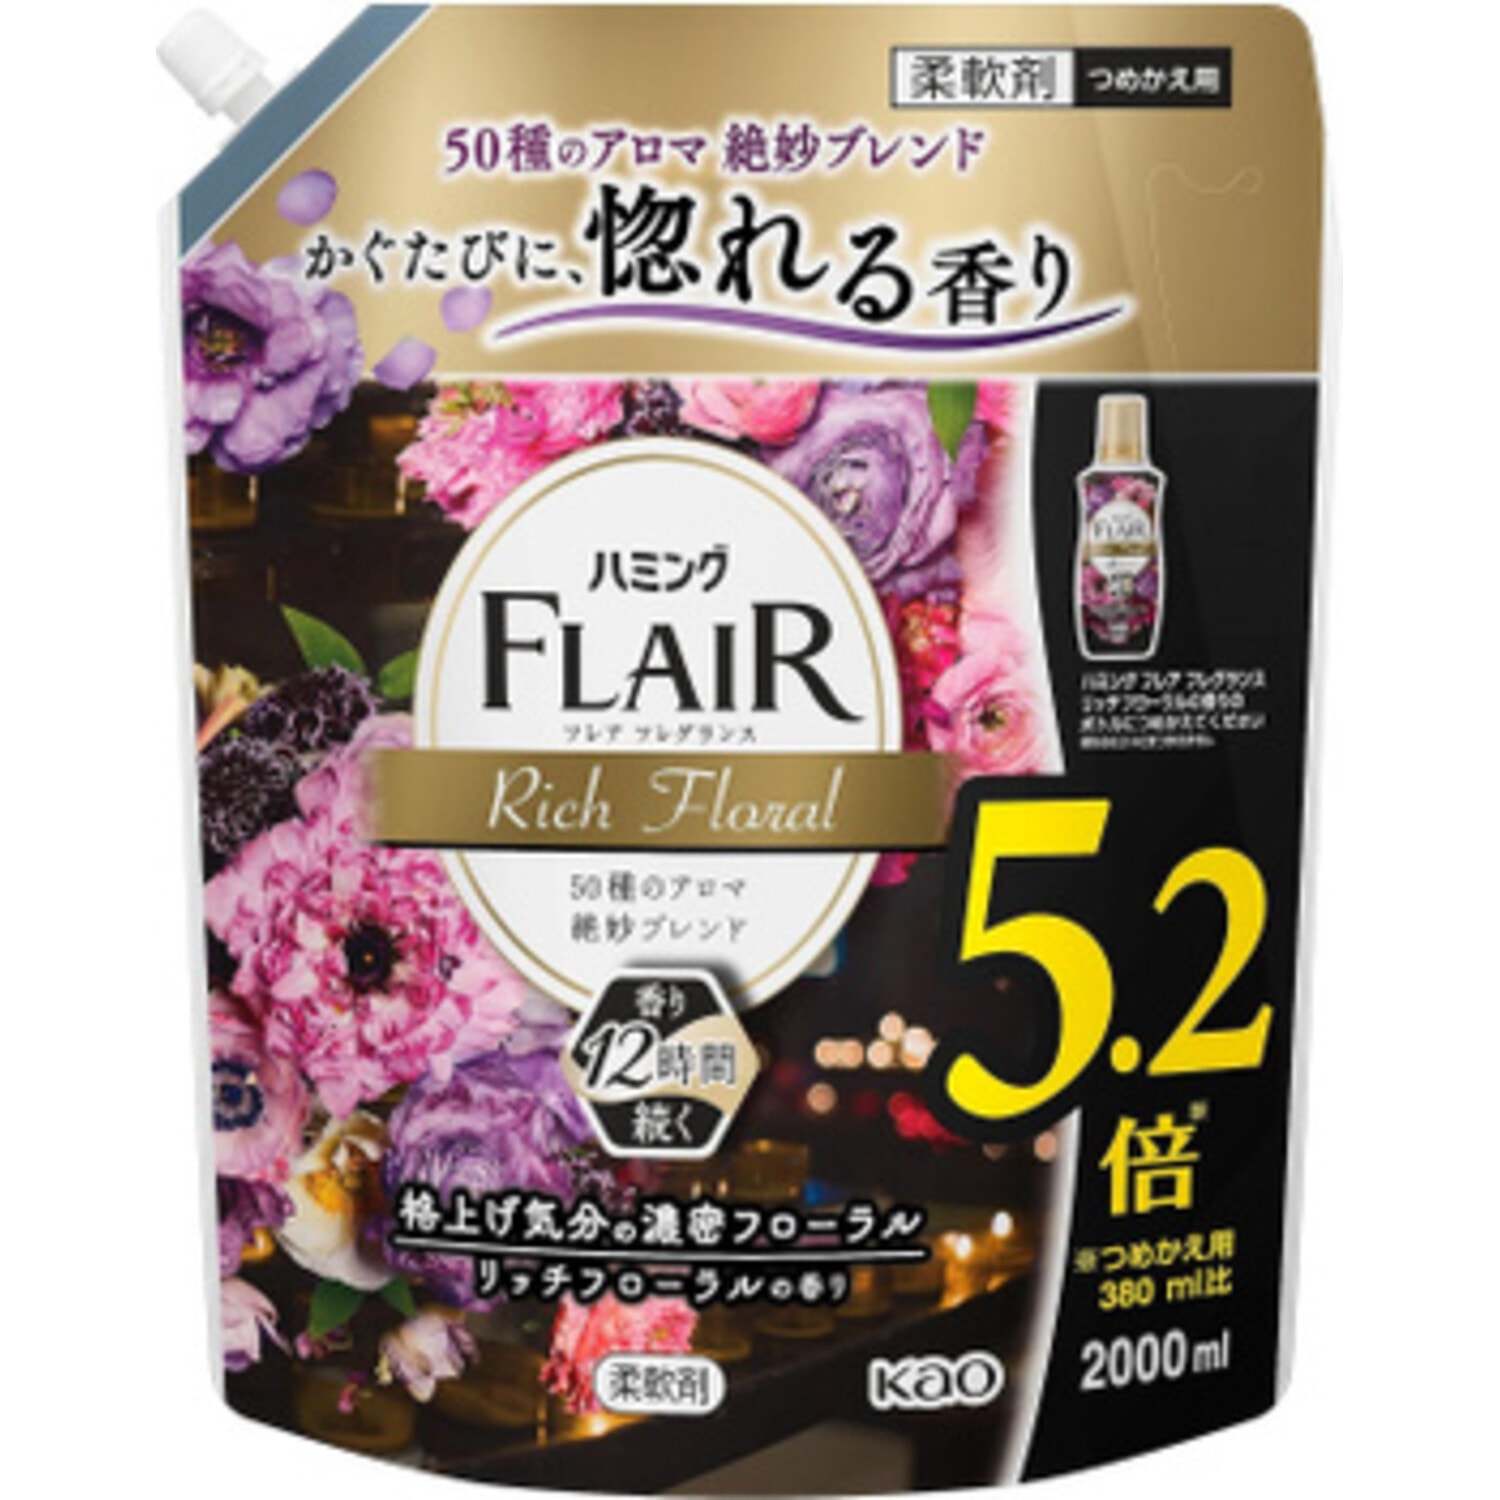 KAO Flair Fragrance Rich Floral, Кондиционер-смягчитель для белья, с богатым фруктово-ягодным ароматом и цветочными нотками, 2000 мл. / 407528